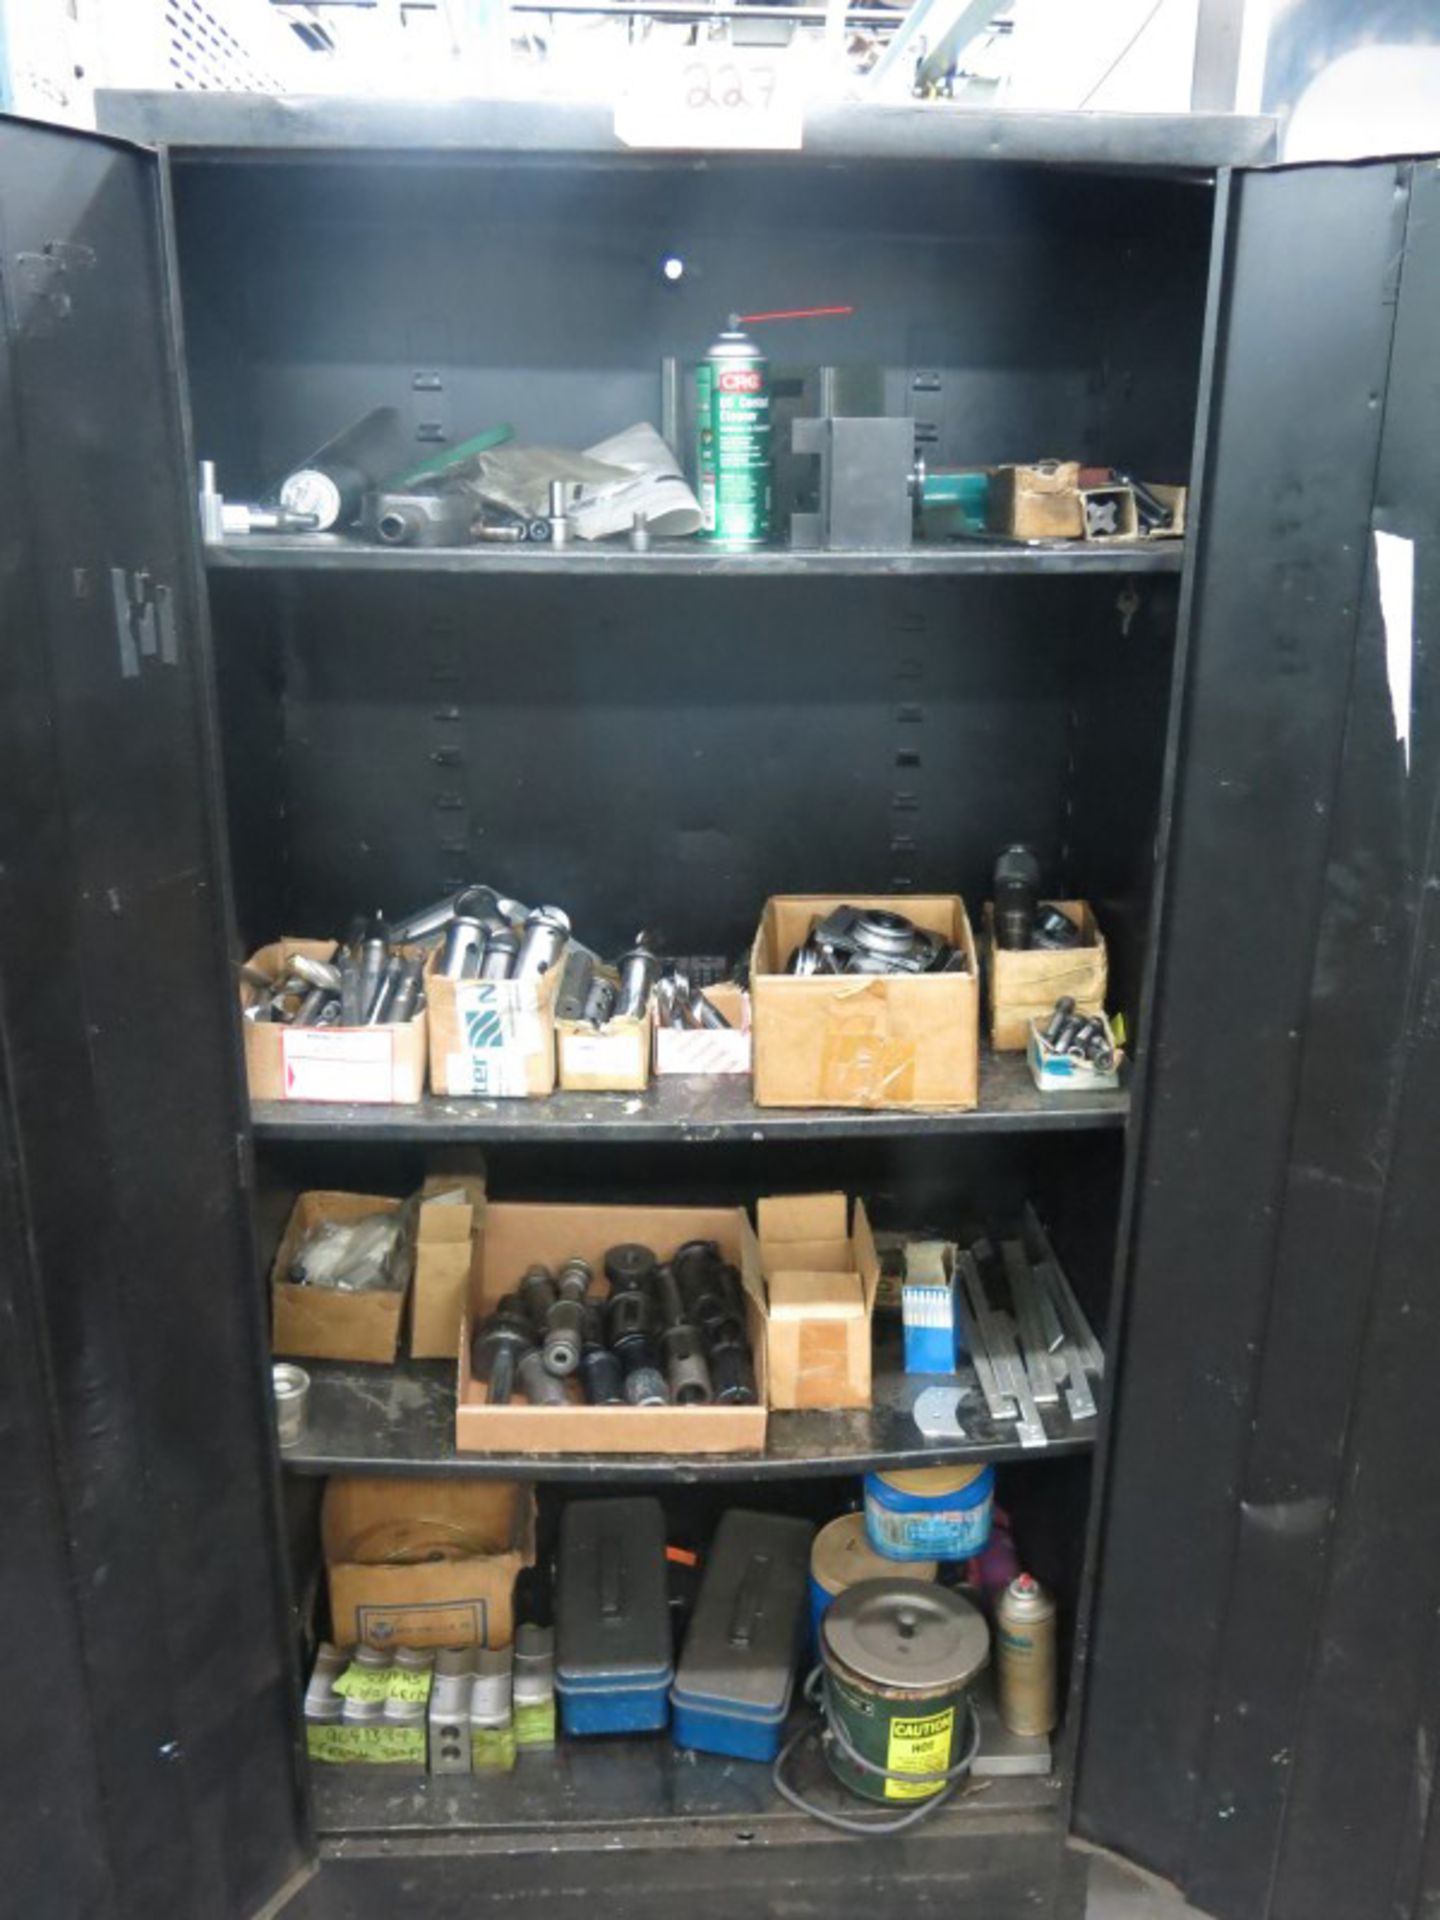 2-Door Metal Cabinet & Shelving Unit w/ Contents